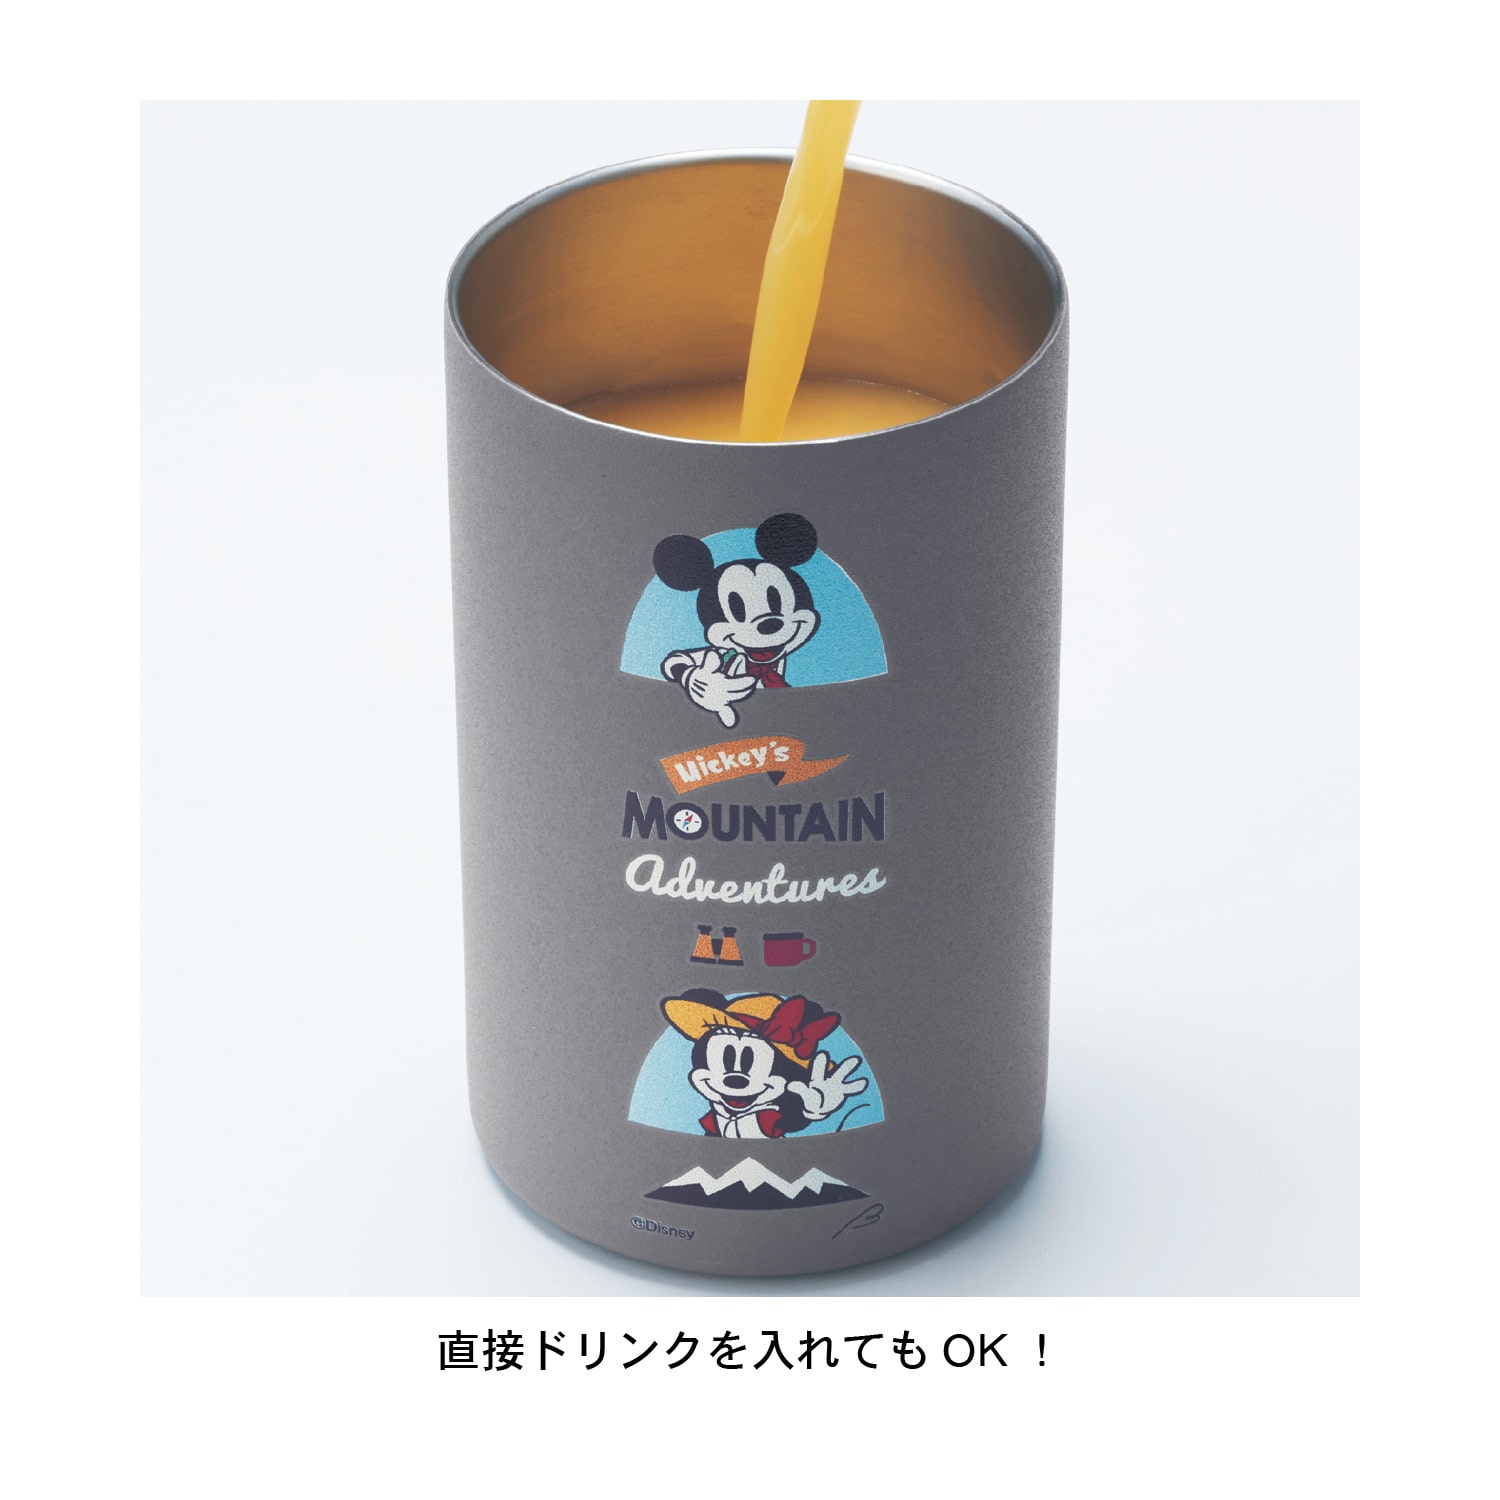 ベルメゾン ディズニー 缶用ステンレス保温保冷マグ(選べるキャラクター) くまのプーさん 500ml